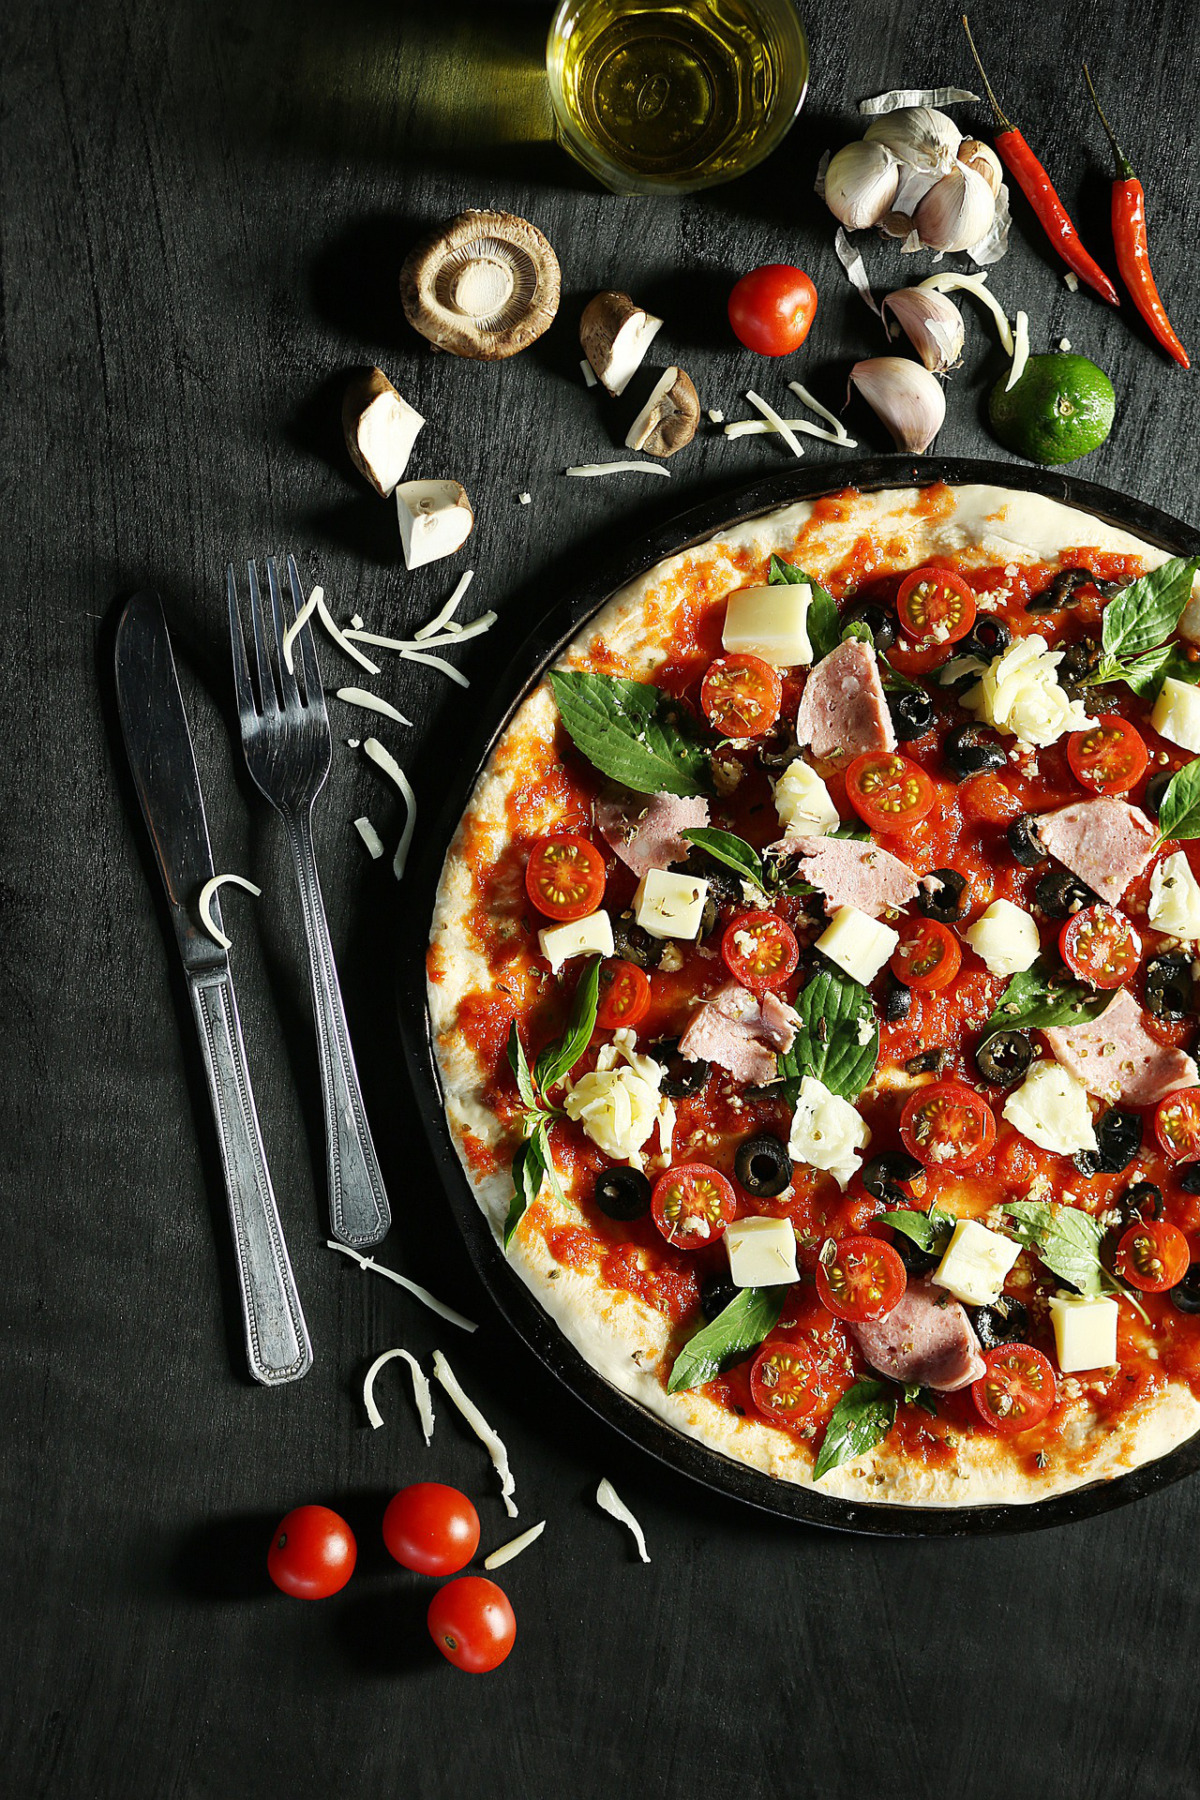 トマト料理で有名な料理の一つがイタリアンピザ